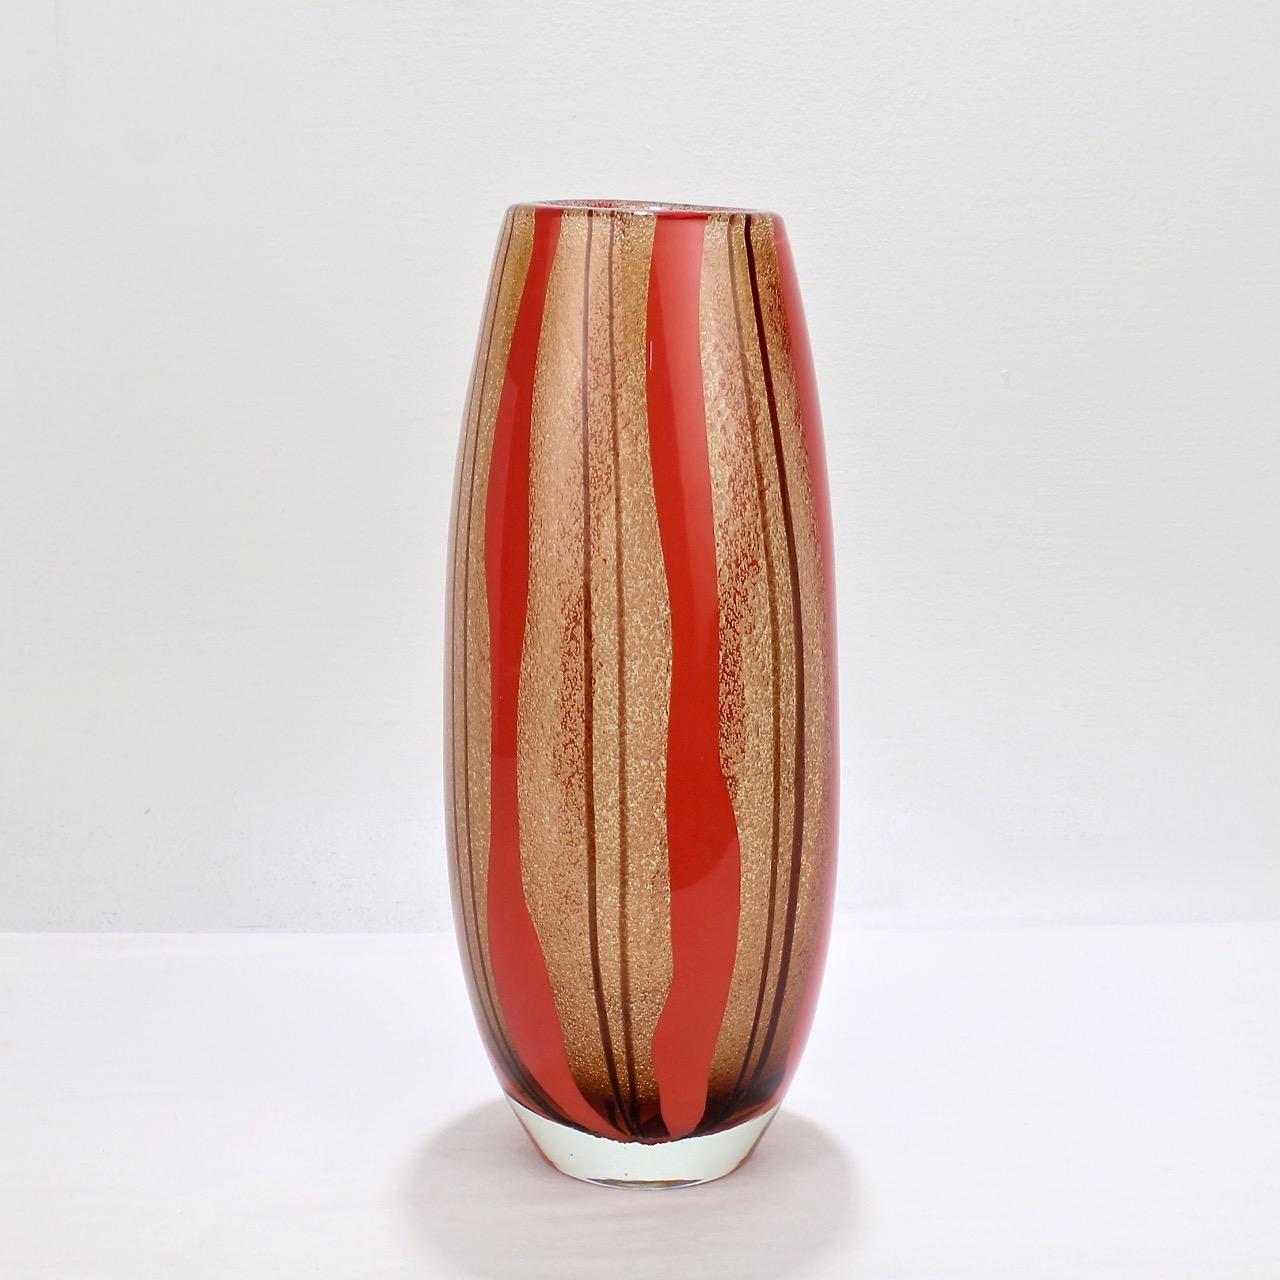 Un bon vase en verre de Murano avec des rayures rouges et violettes.

Dans le style de Flavio Poli, avec un corps épais, une bullicine et une décoration en forme de visage.

Mesure : Hauteur ca. 12 1/2 in.

Les articles achetés chez ce